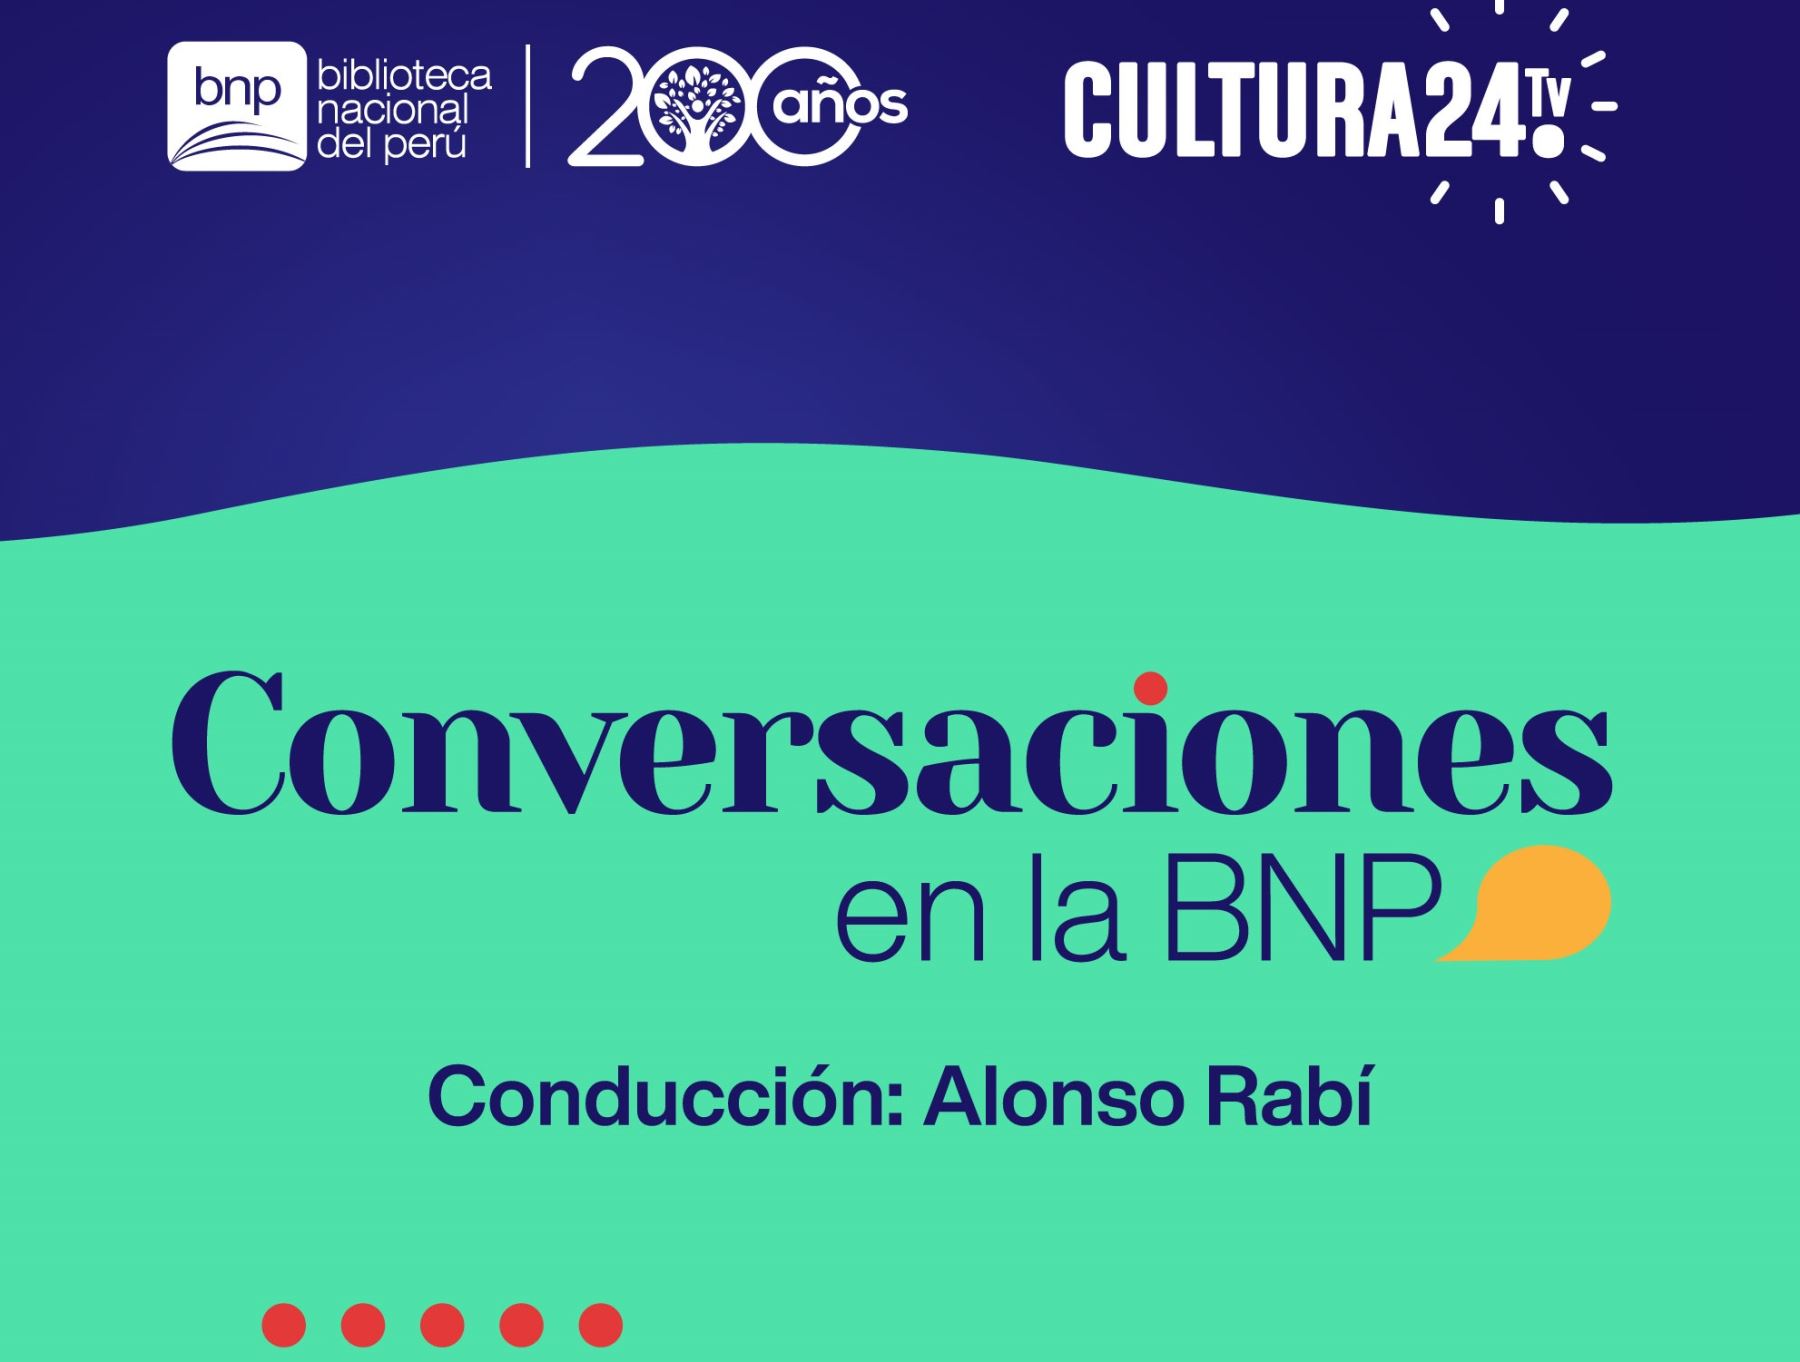 Biblioteca Nacional: Programa "Conversaciones en la BNP", ahora también en podcast.